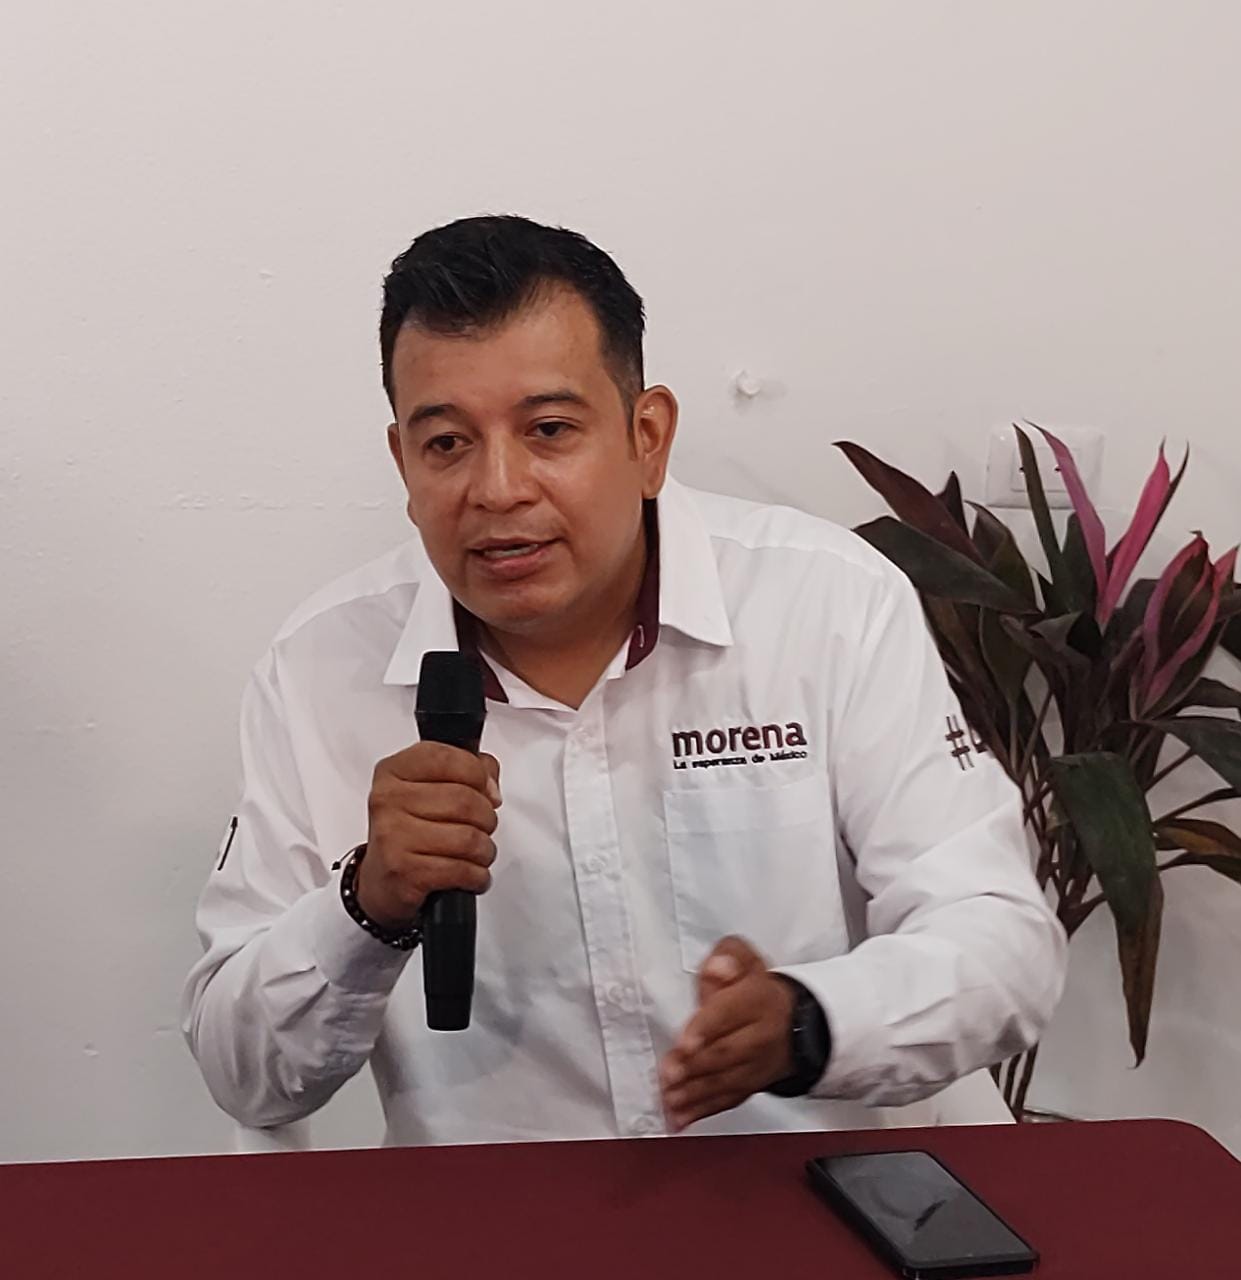 Dirigente de Morena pide analizar perfiles de quienes sean candidatos ciudadanos